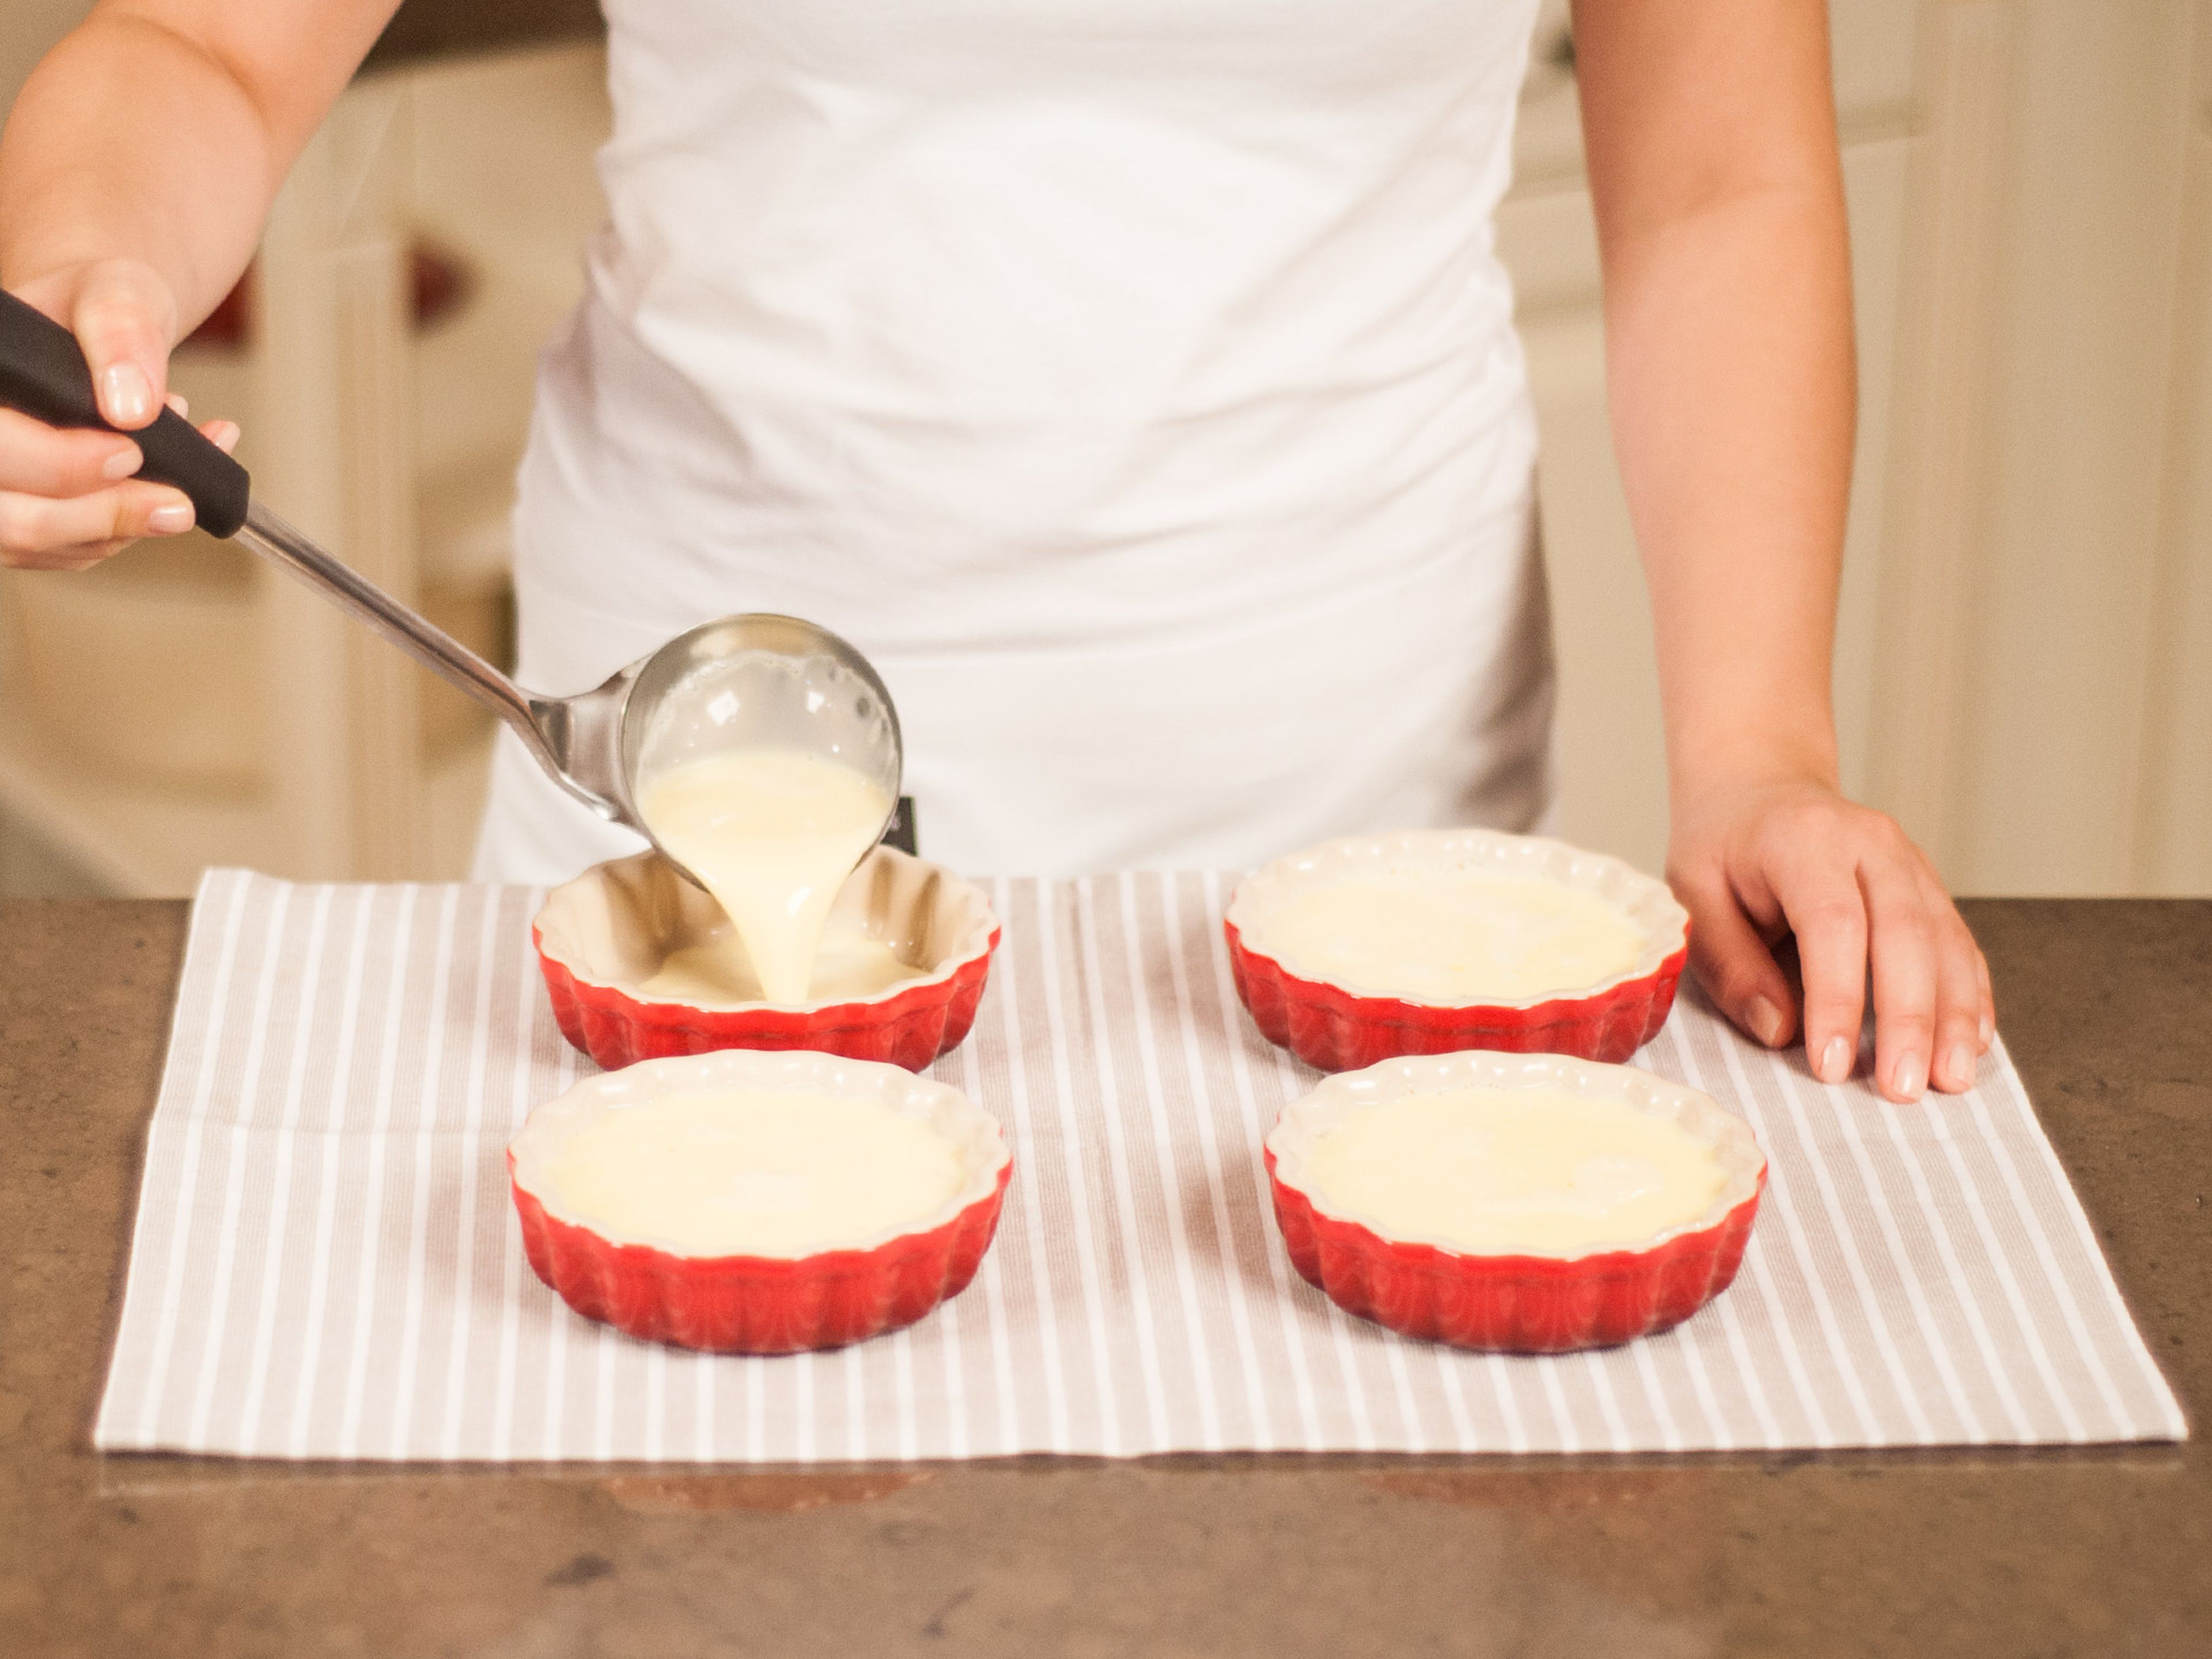 Die Backförmchen mit der Masse befüllen und bei 110°C ca. 40 – 45 Min. backen, bis der Pudding fest ist. Anschließend aus dem Backofen nehmen und abkühlen lassen.